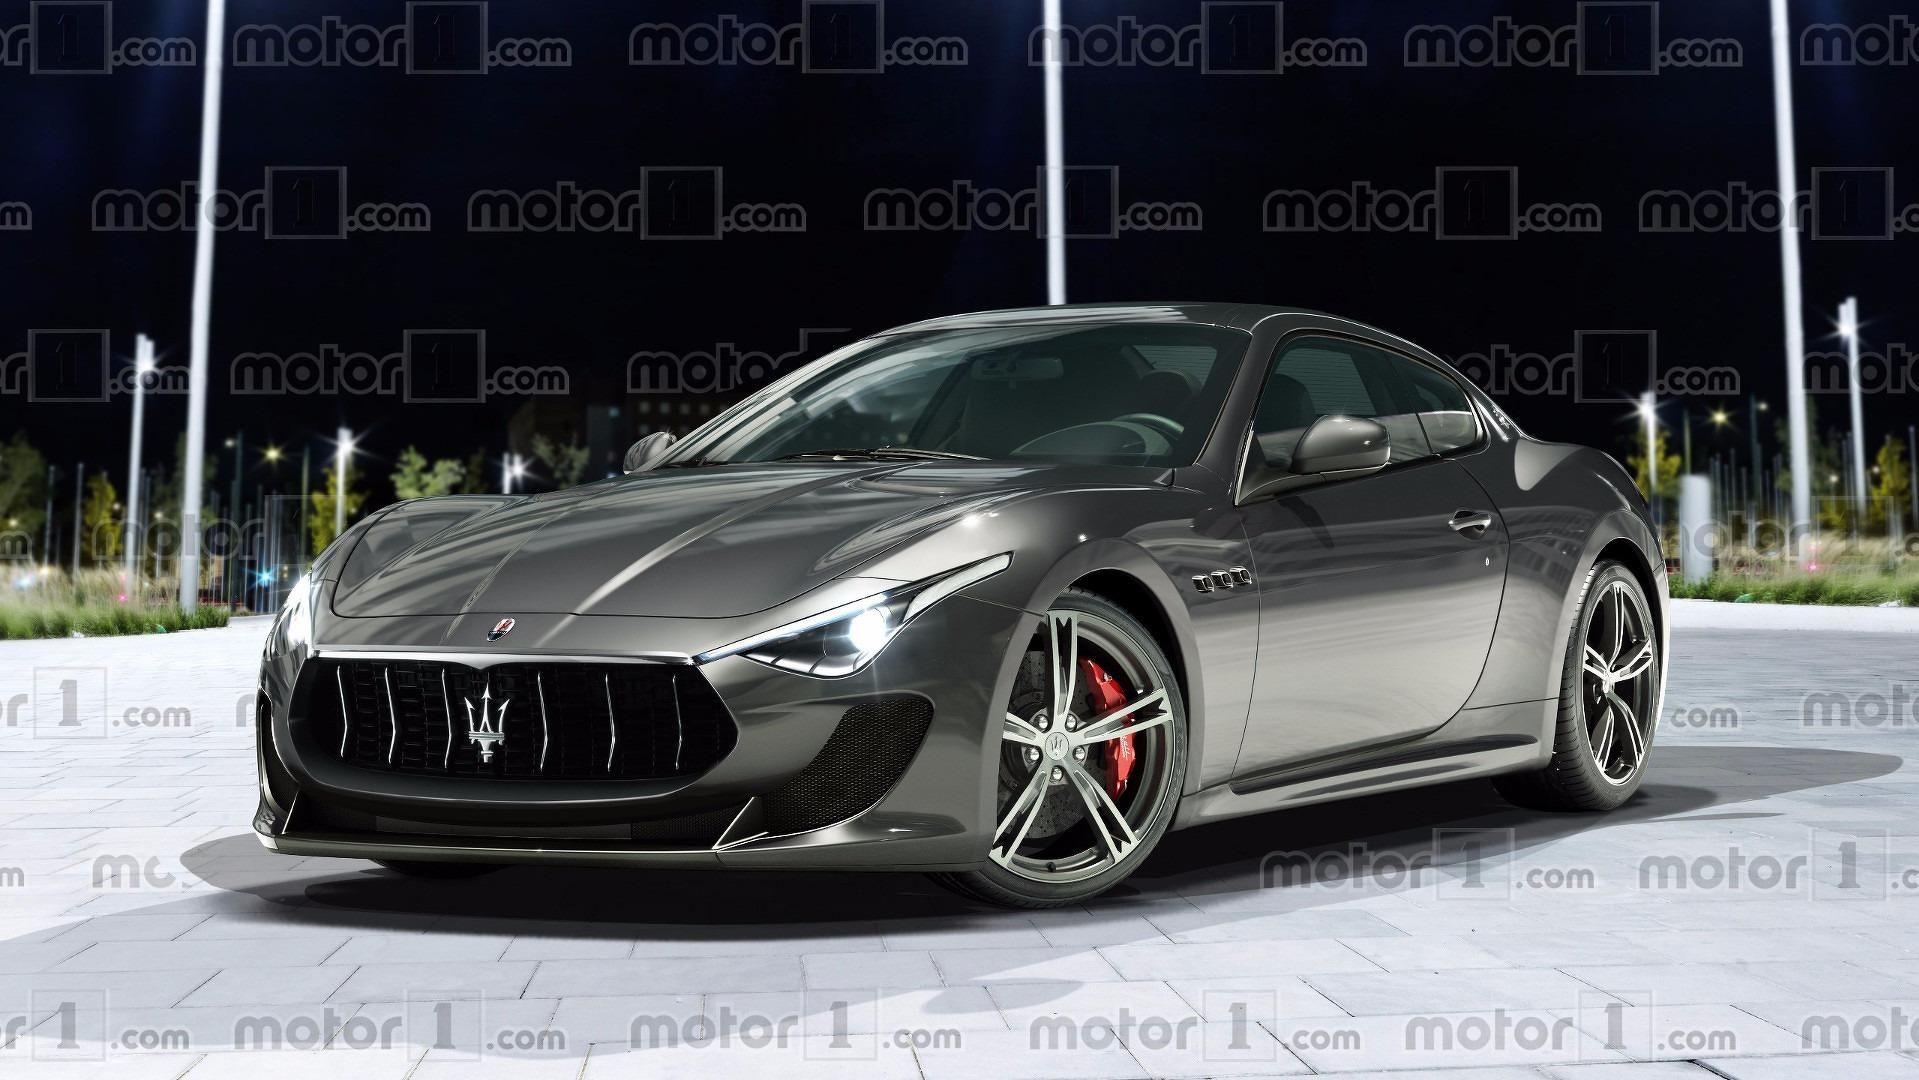 2018 Maserati Granturismo Render Predicts A Beautiful Future